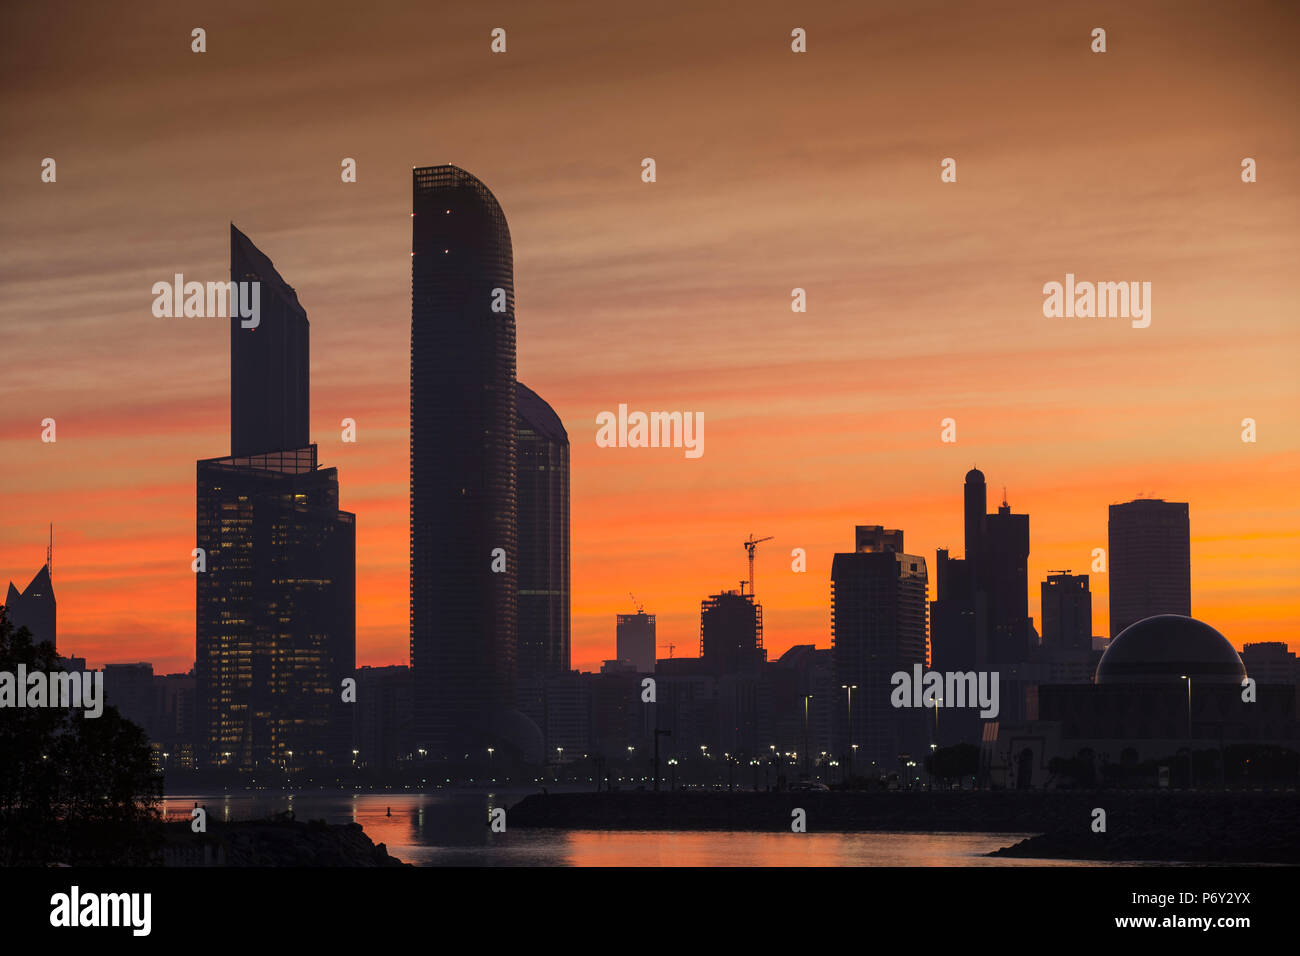 United Arab Emirates, Abu Dhabi, View of City skyline at sunrise Stock Photo